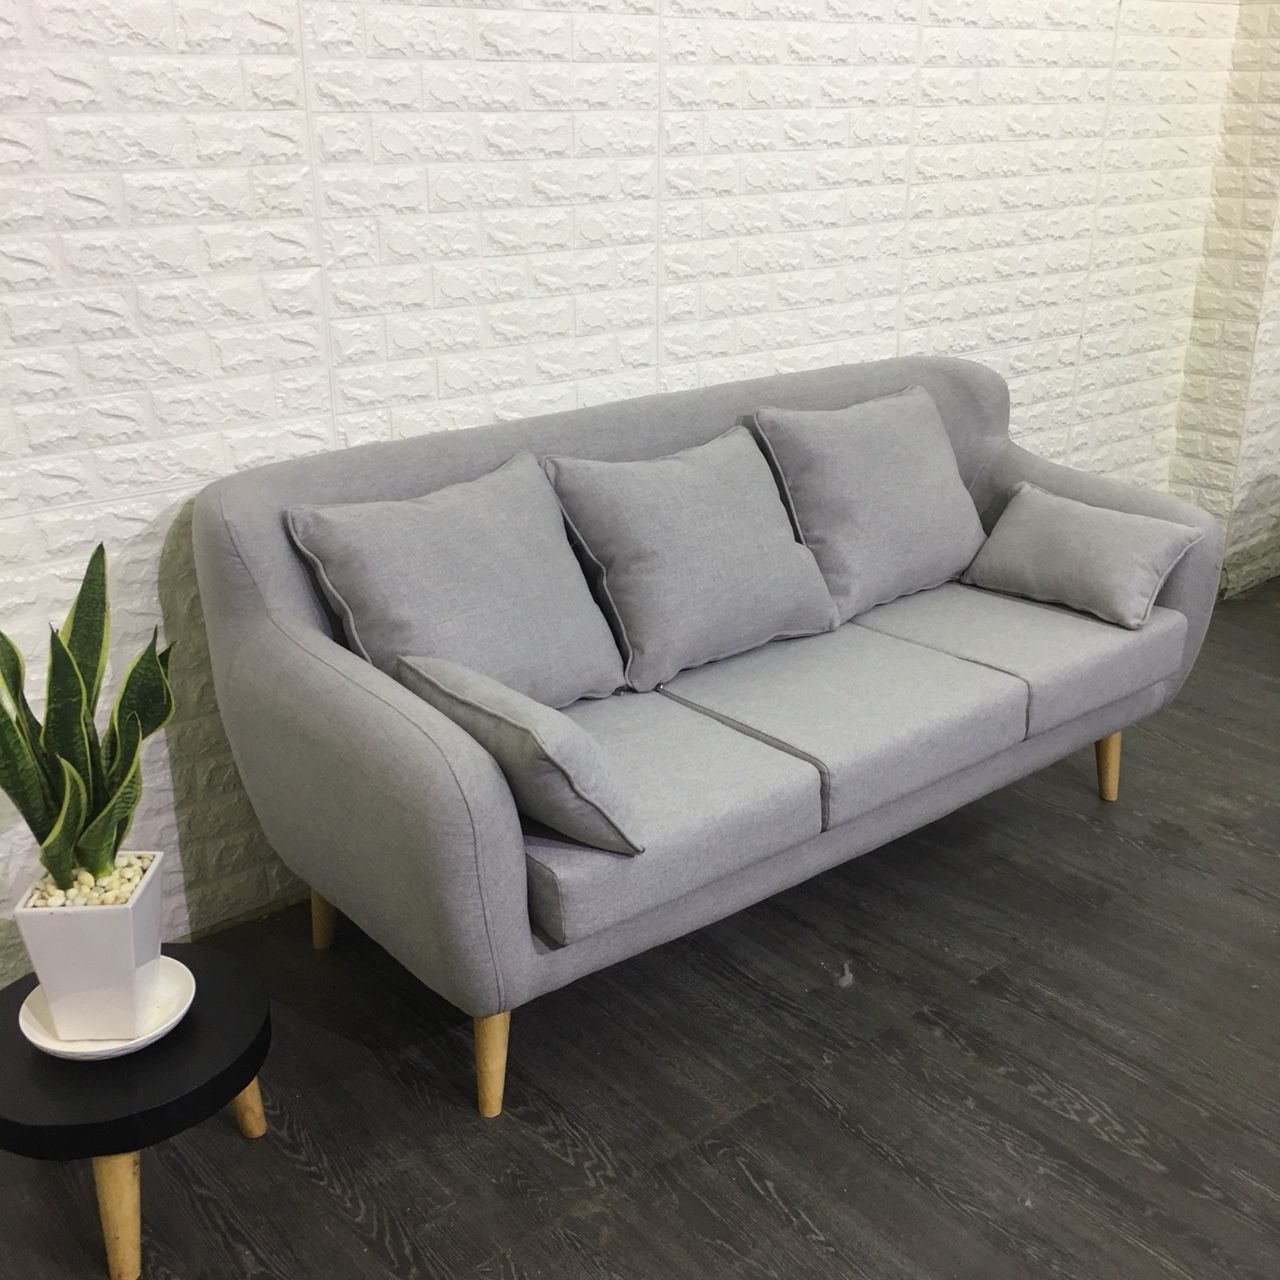 Sofa băng chung cư 1.8m (XÁM) Tặng bộ 5 gối trang trí